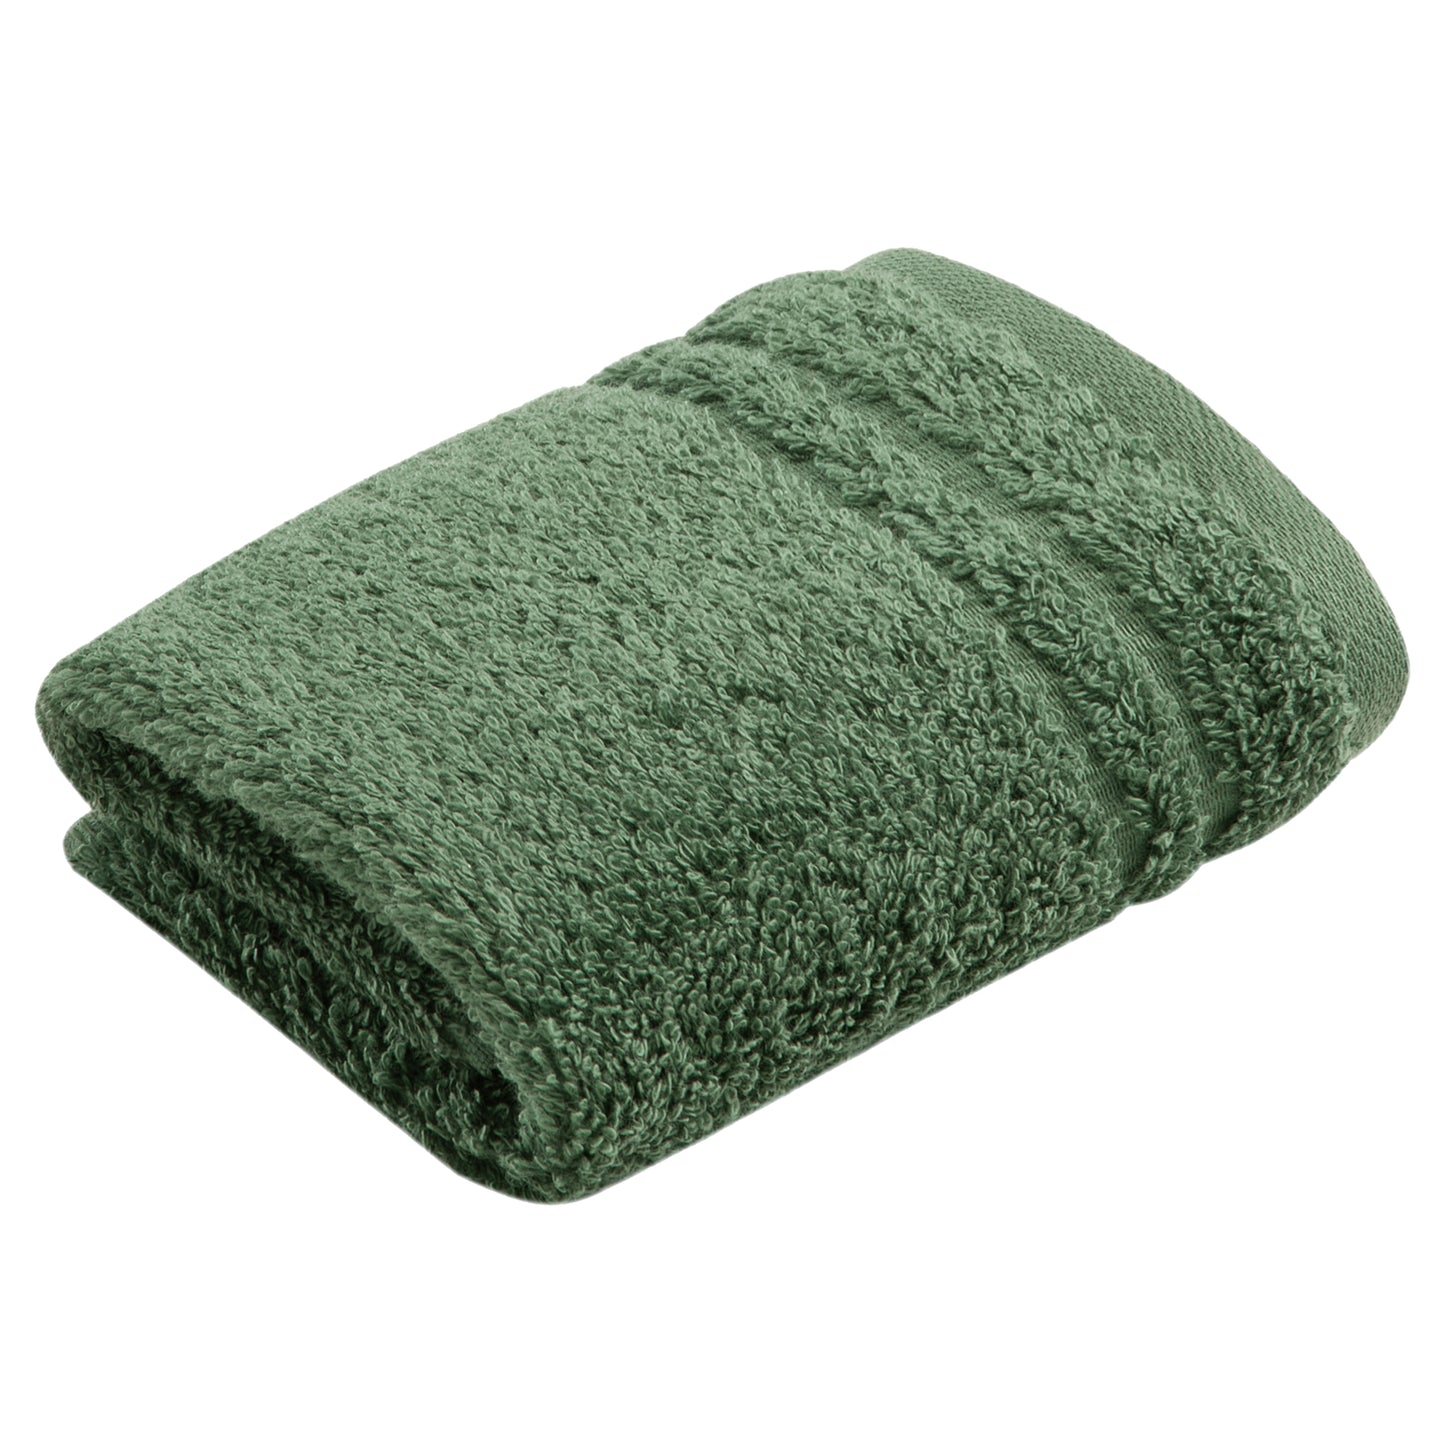 Ręcznik z bawełny organicznej Vienna Style evergreen